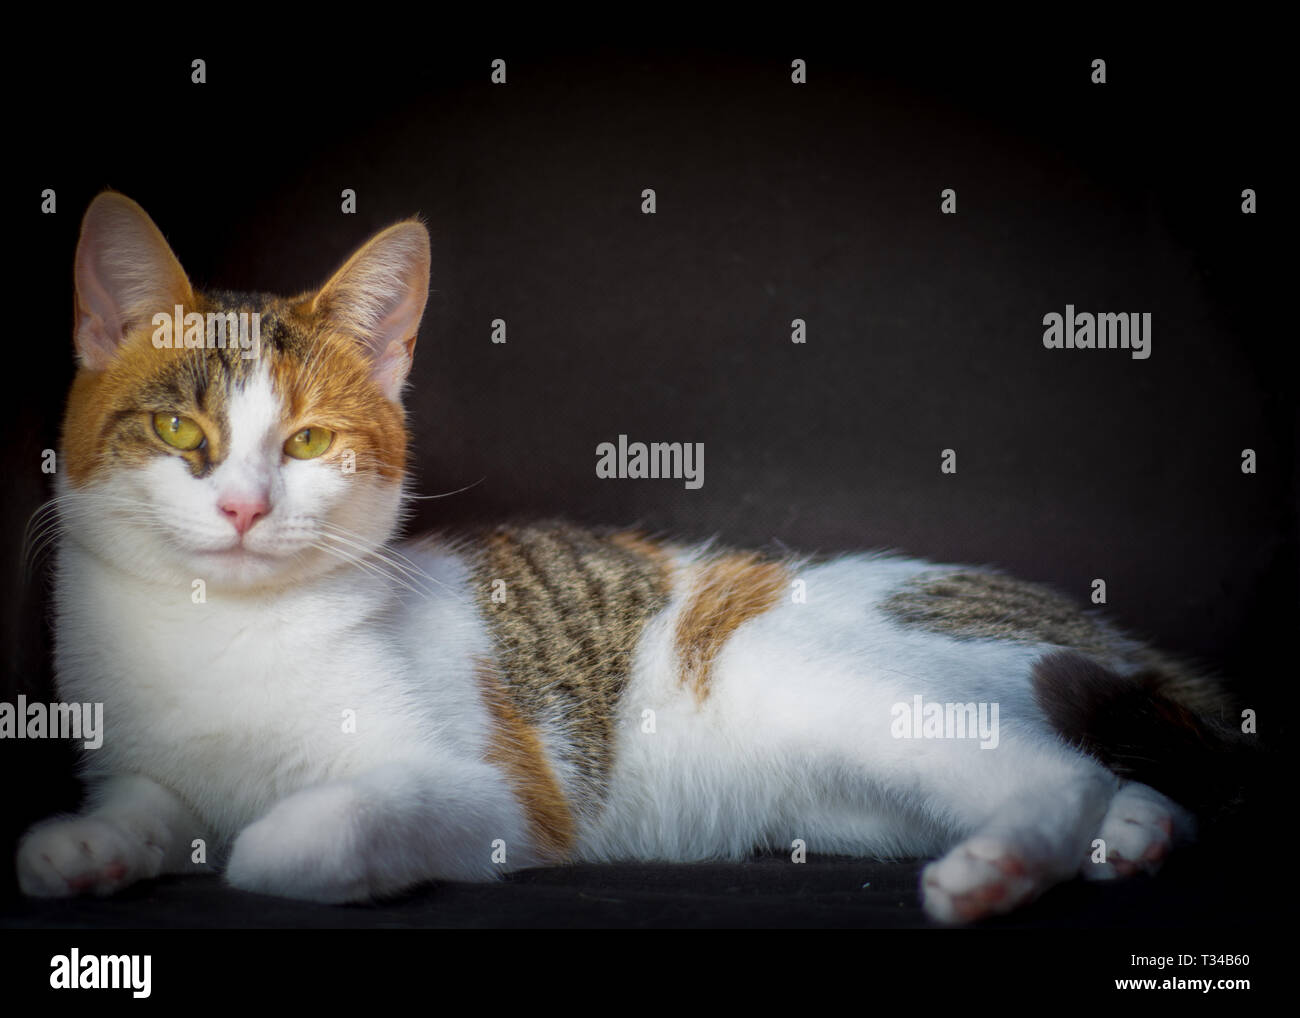 Un portrait d'un chat contre un arrière-plan noir studio pour donner l'image un look classique. Banque D'Images